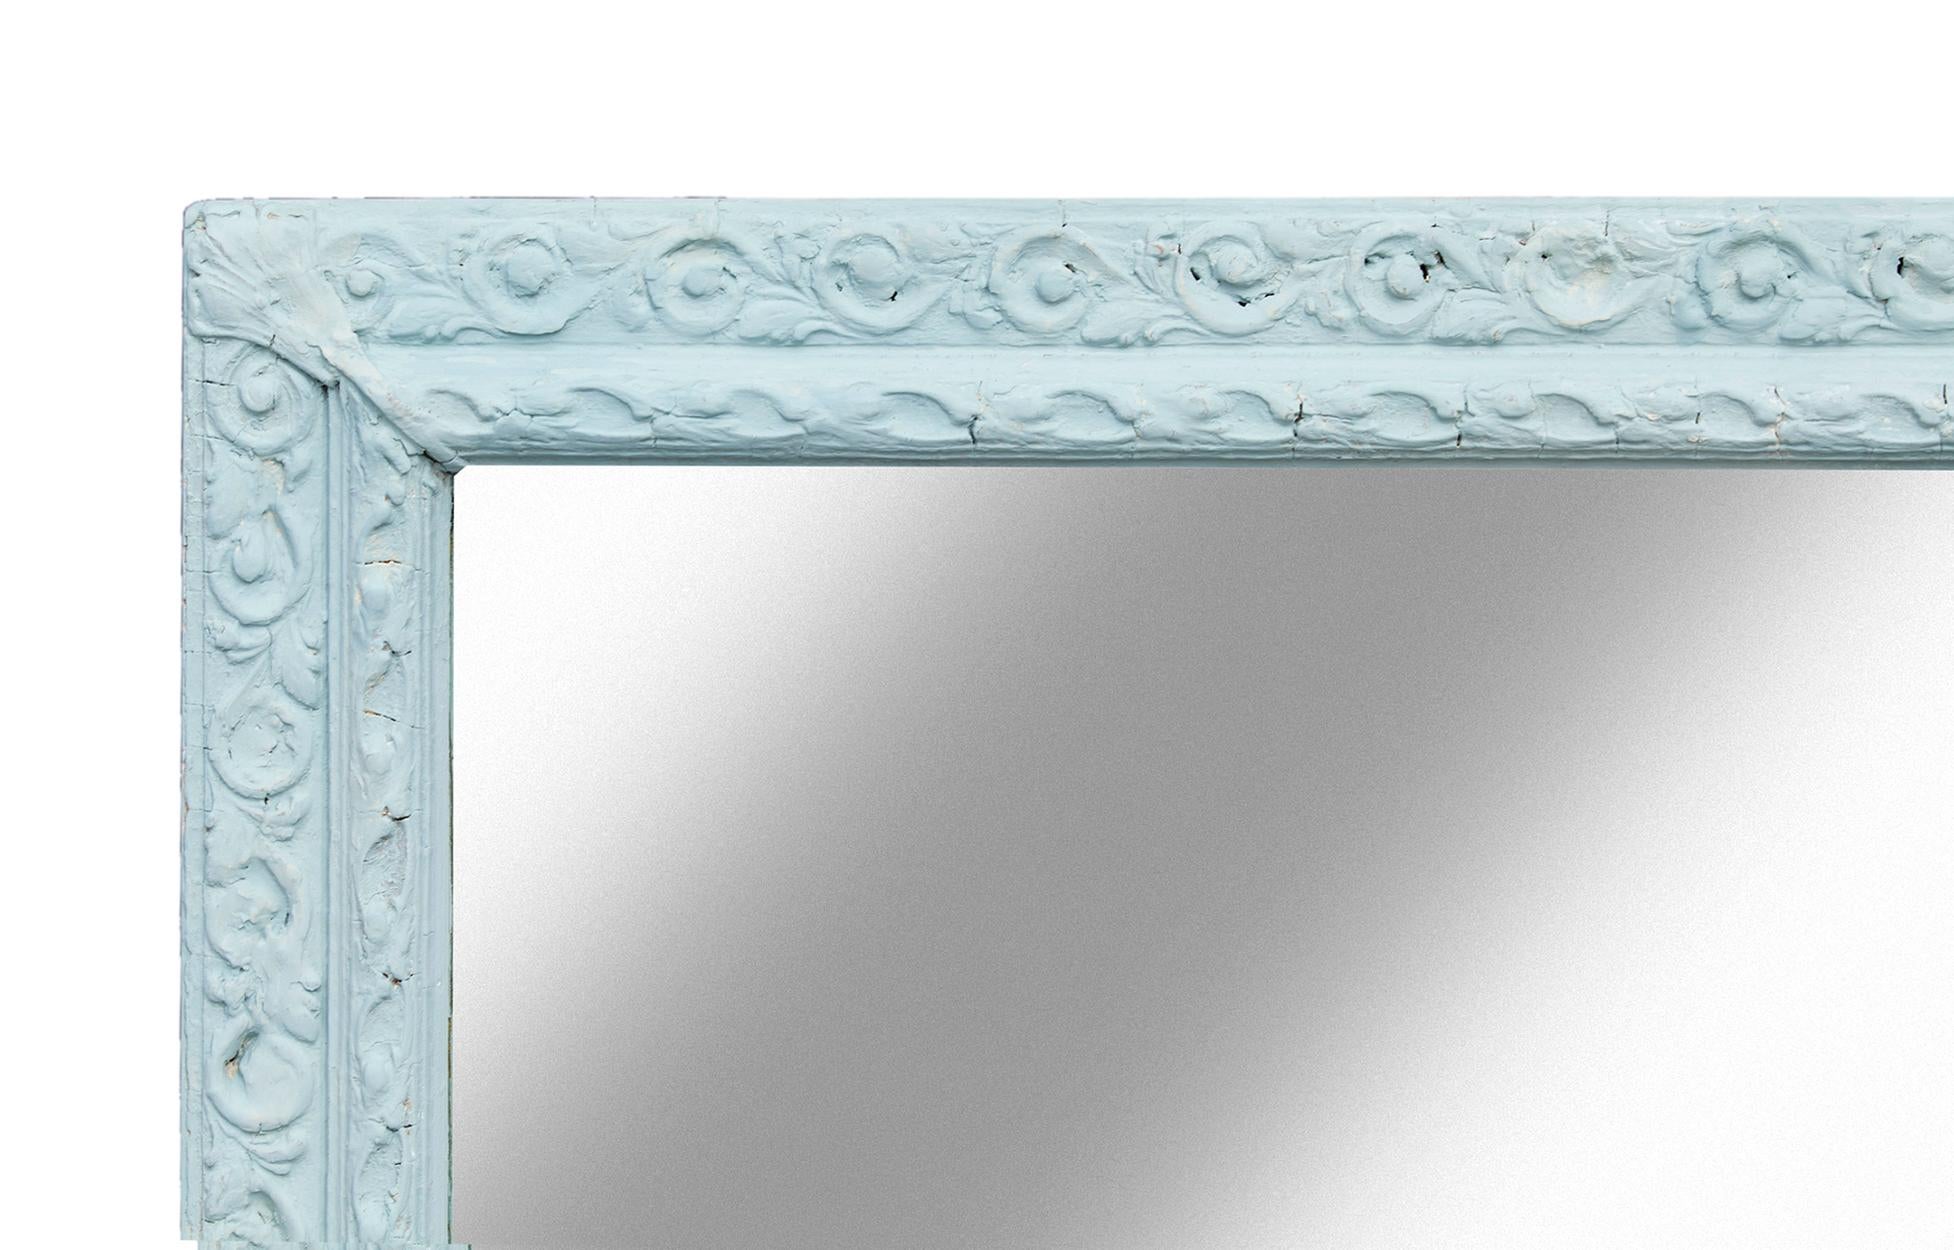 Großer netzartiger viktorianischer Spiegel, verziertes Rapportmuster, handbemalt in blassblauem Samtlack. Zum horizontalen und vertikalen Aufhängen verdrahtet. 
Neue Unterlage &Draht.